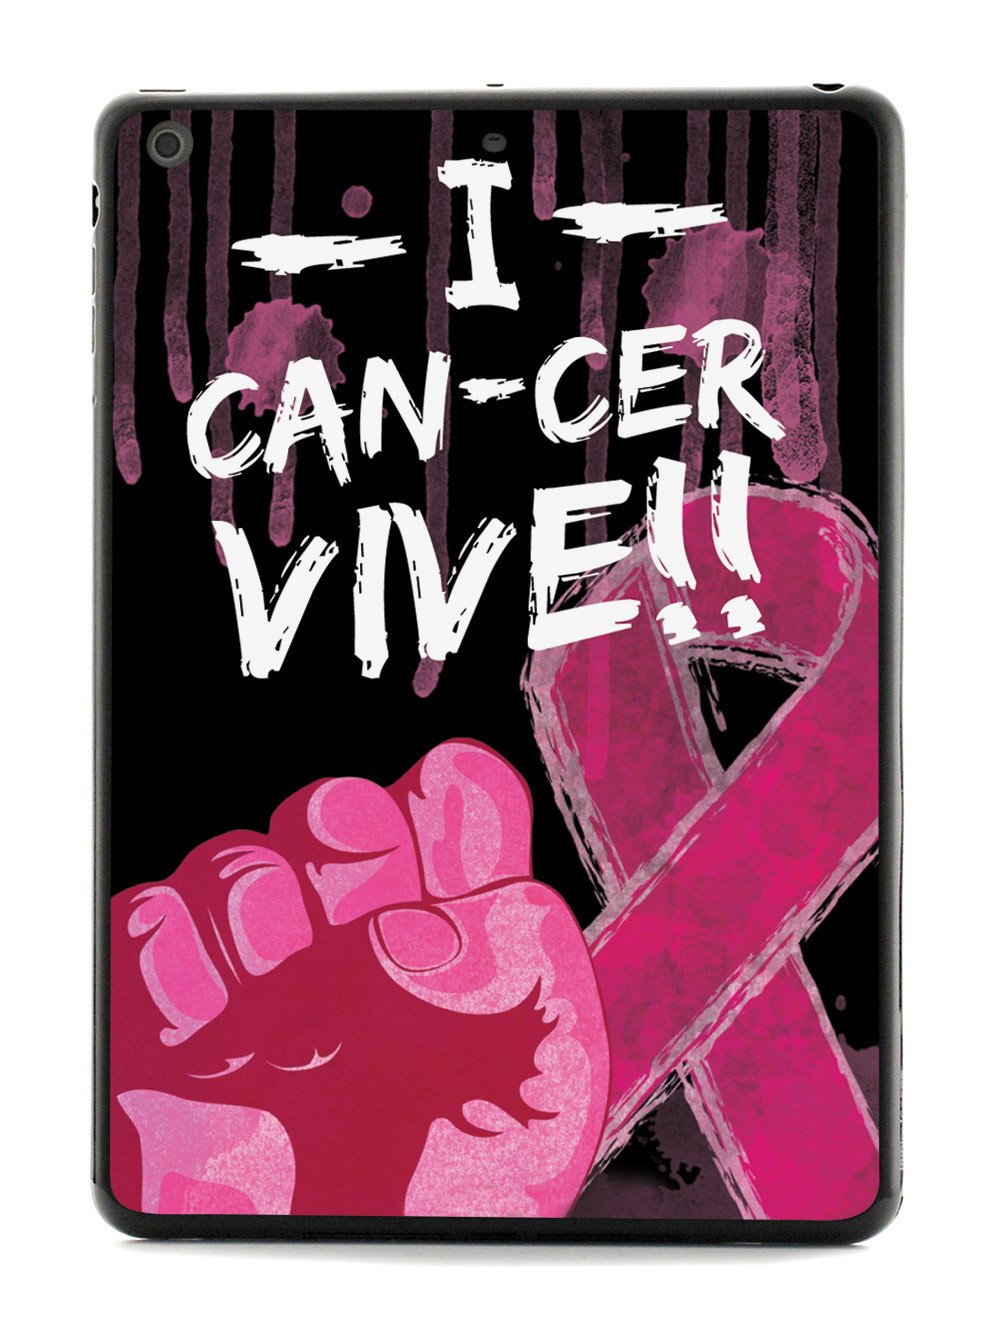 I Can-Cer Vive! Cancer Case